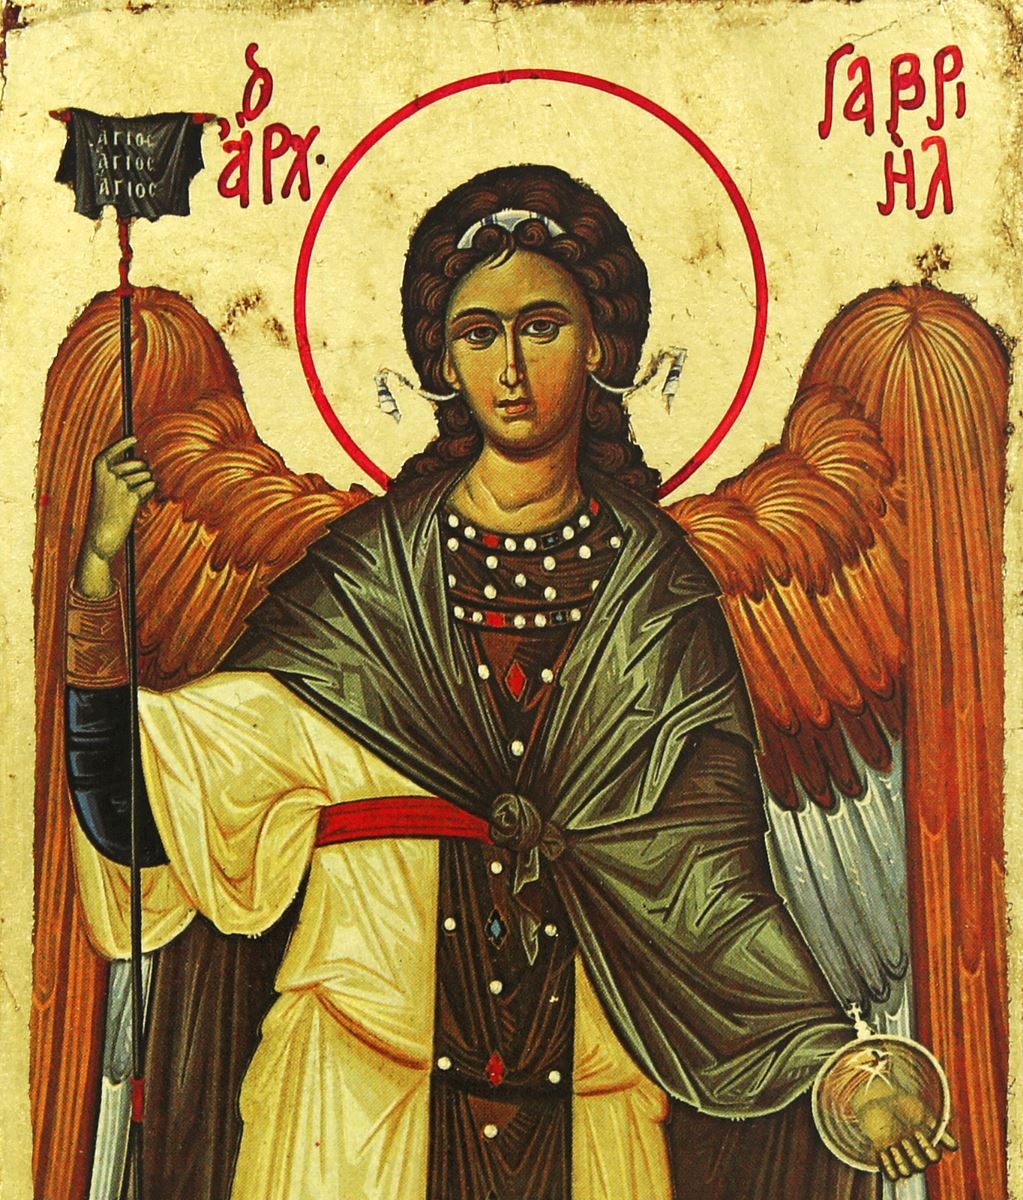 icona san gabriele arcangelo, icona in stile arte bizantina, icona su legno rifinita con aureole, scritte e bordure fatte a mano, produzione greca - 18 x 14 cm